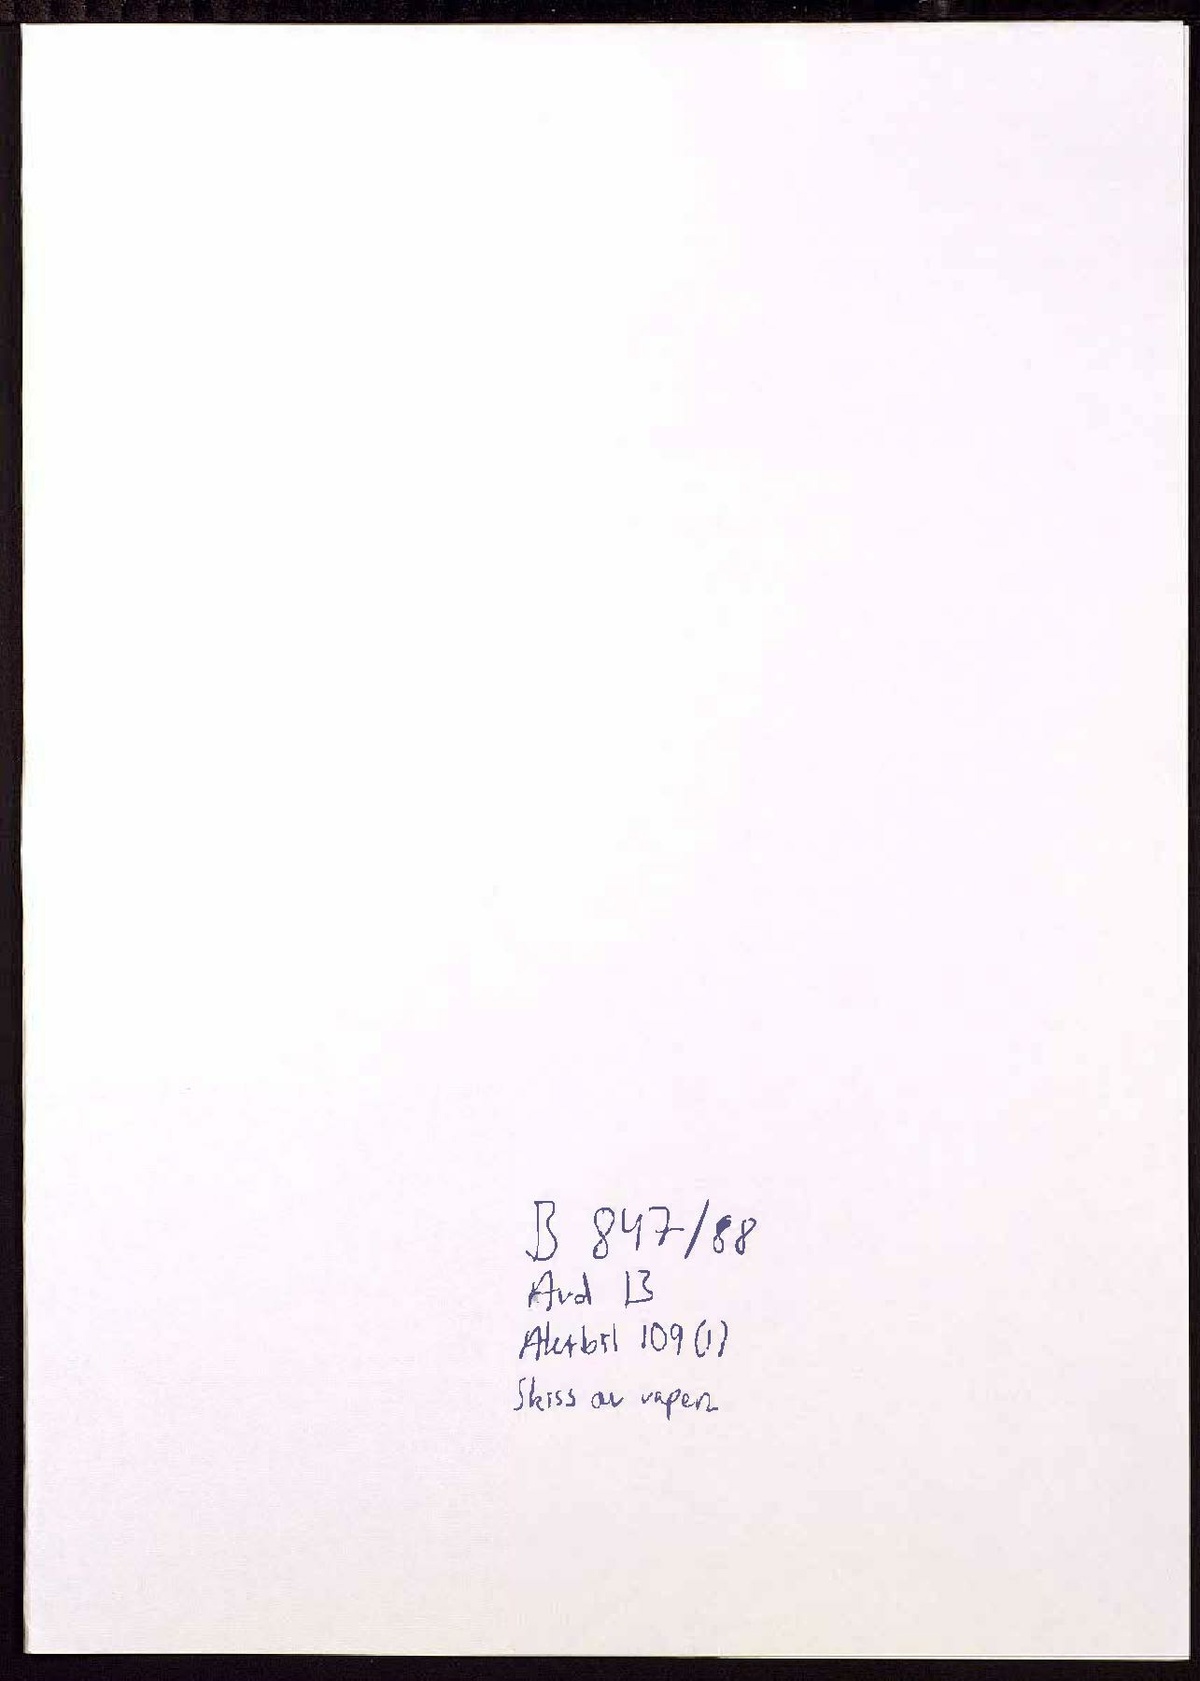 Pol-1989-04-12 0915 KB10396-00-G Jan Lundberg.pdf